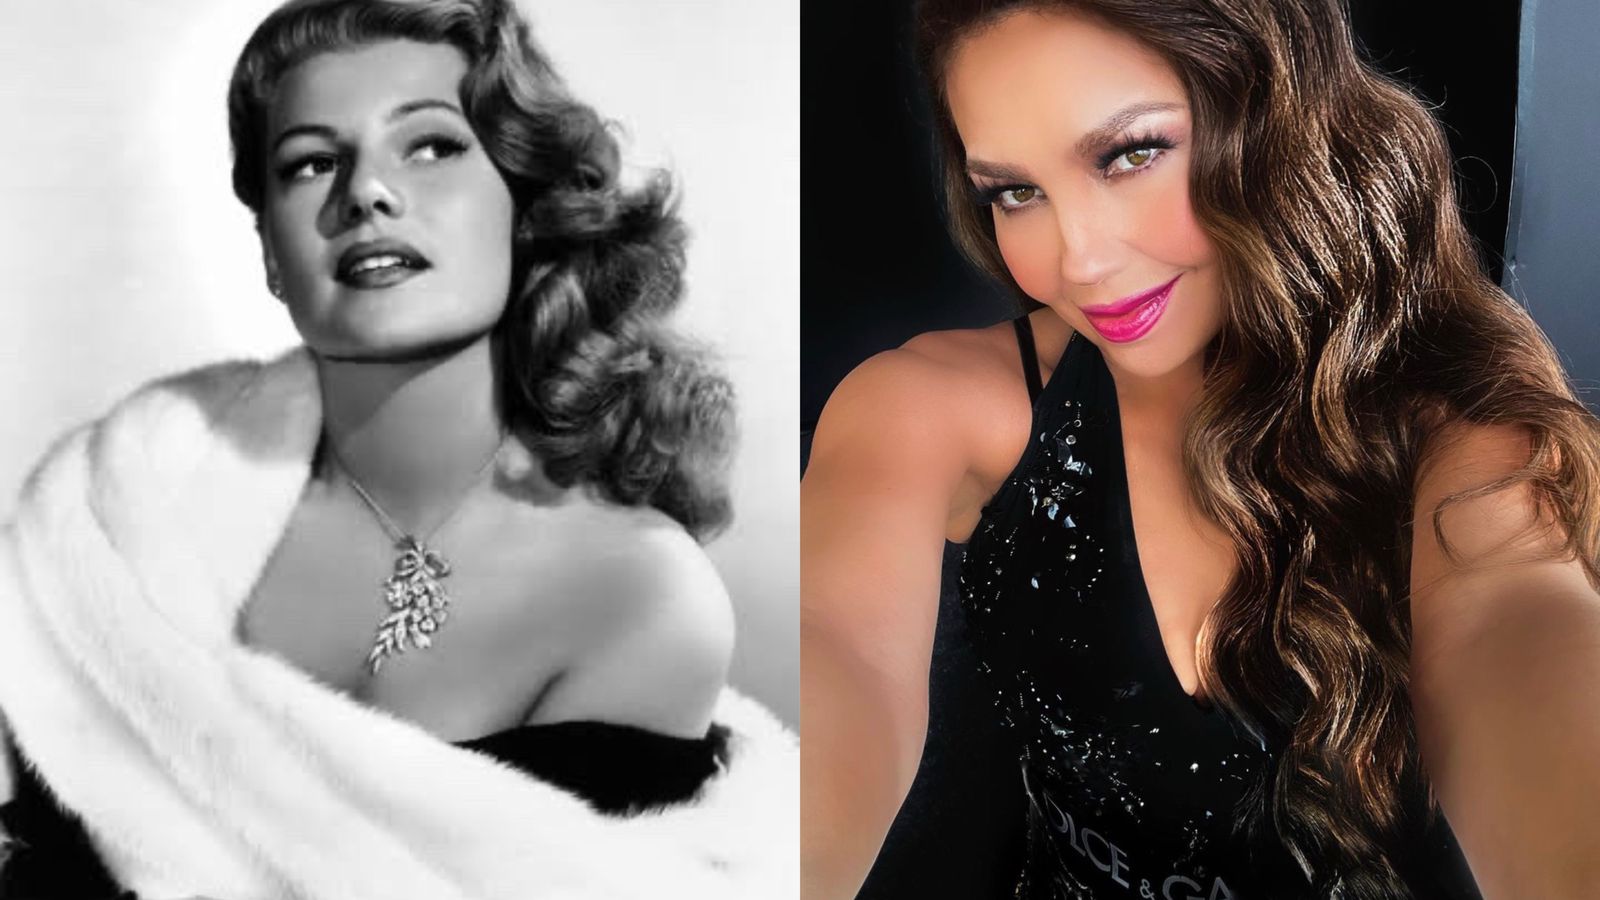 Las actrices son comparadas en redes sociales (Fotos: Instagram/@thalia/Twitter/@cinemecgold)